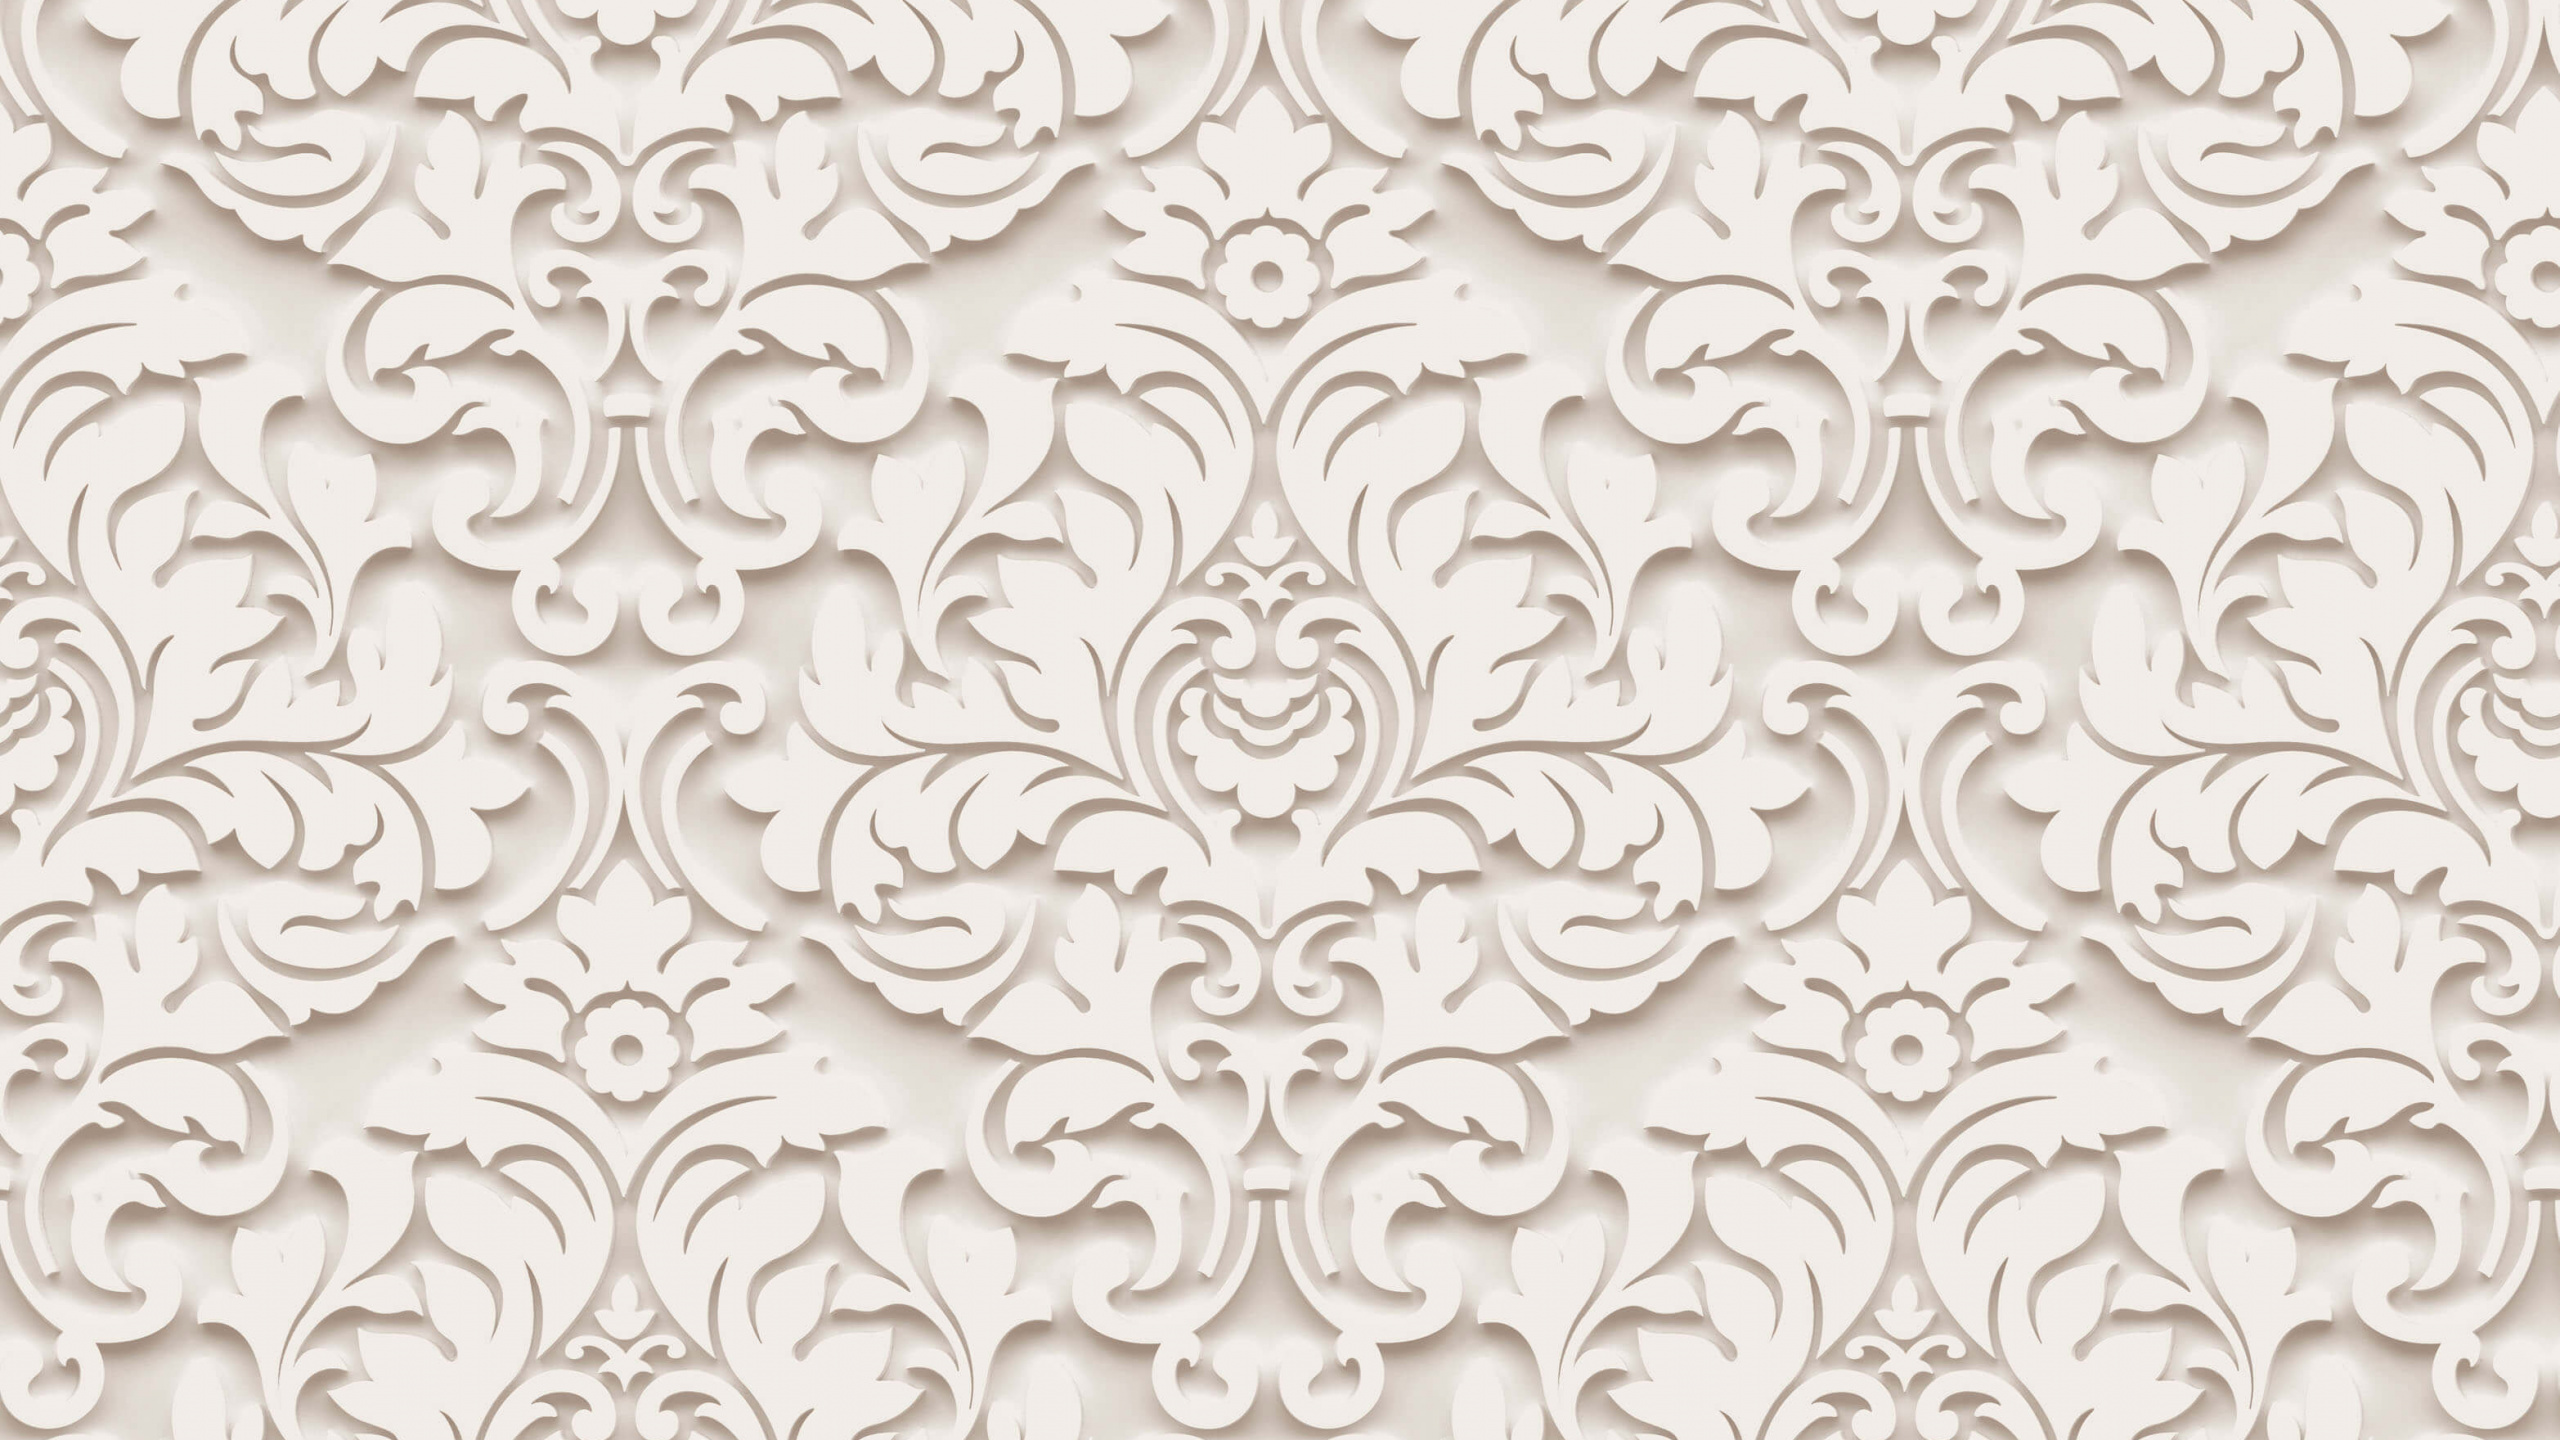 Textile Floral Blanc et Noir. Wallpaper in 2560x1440 Resolution